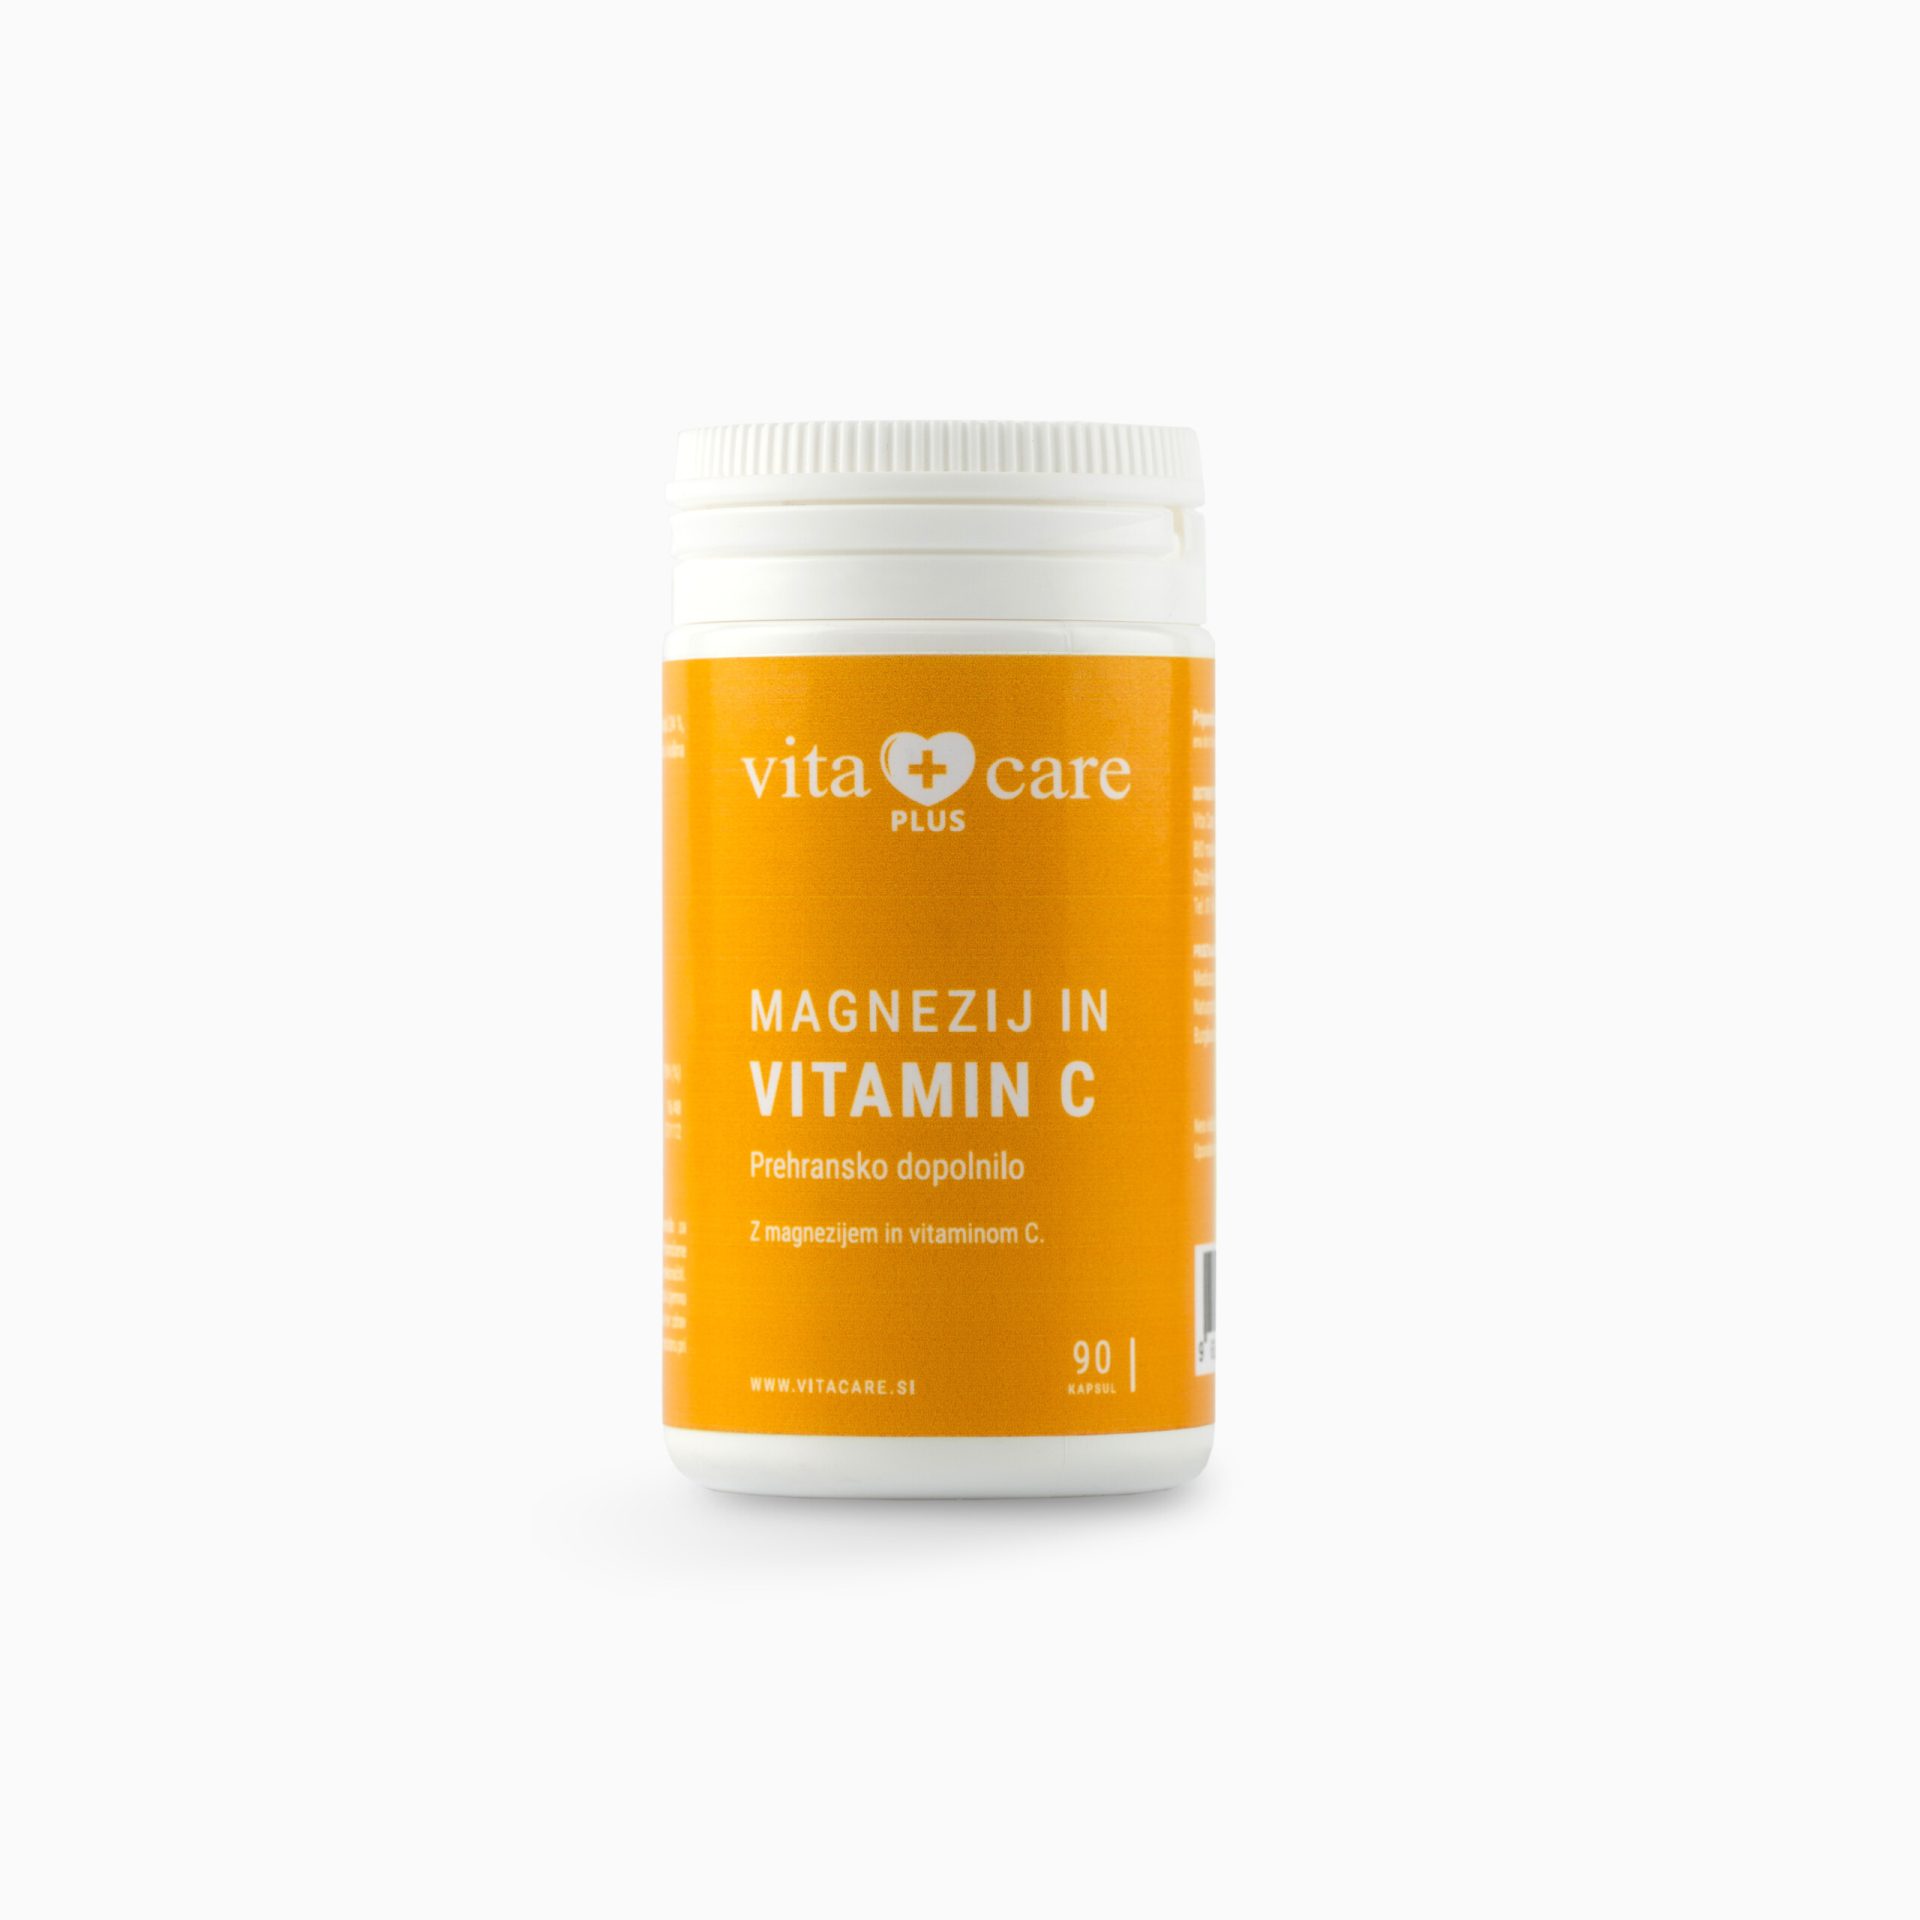 Vita Care Plus Magnezij in vitamin C, 90 kapsul